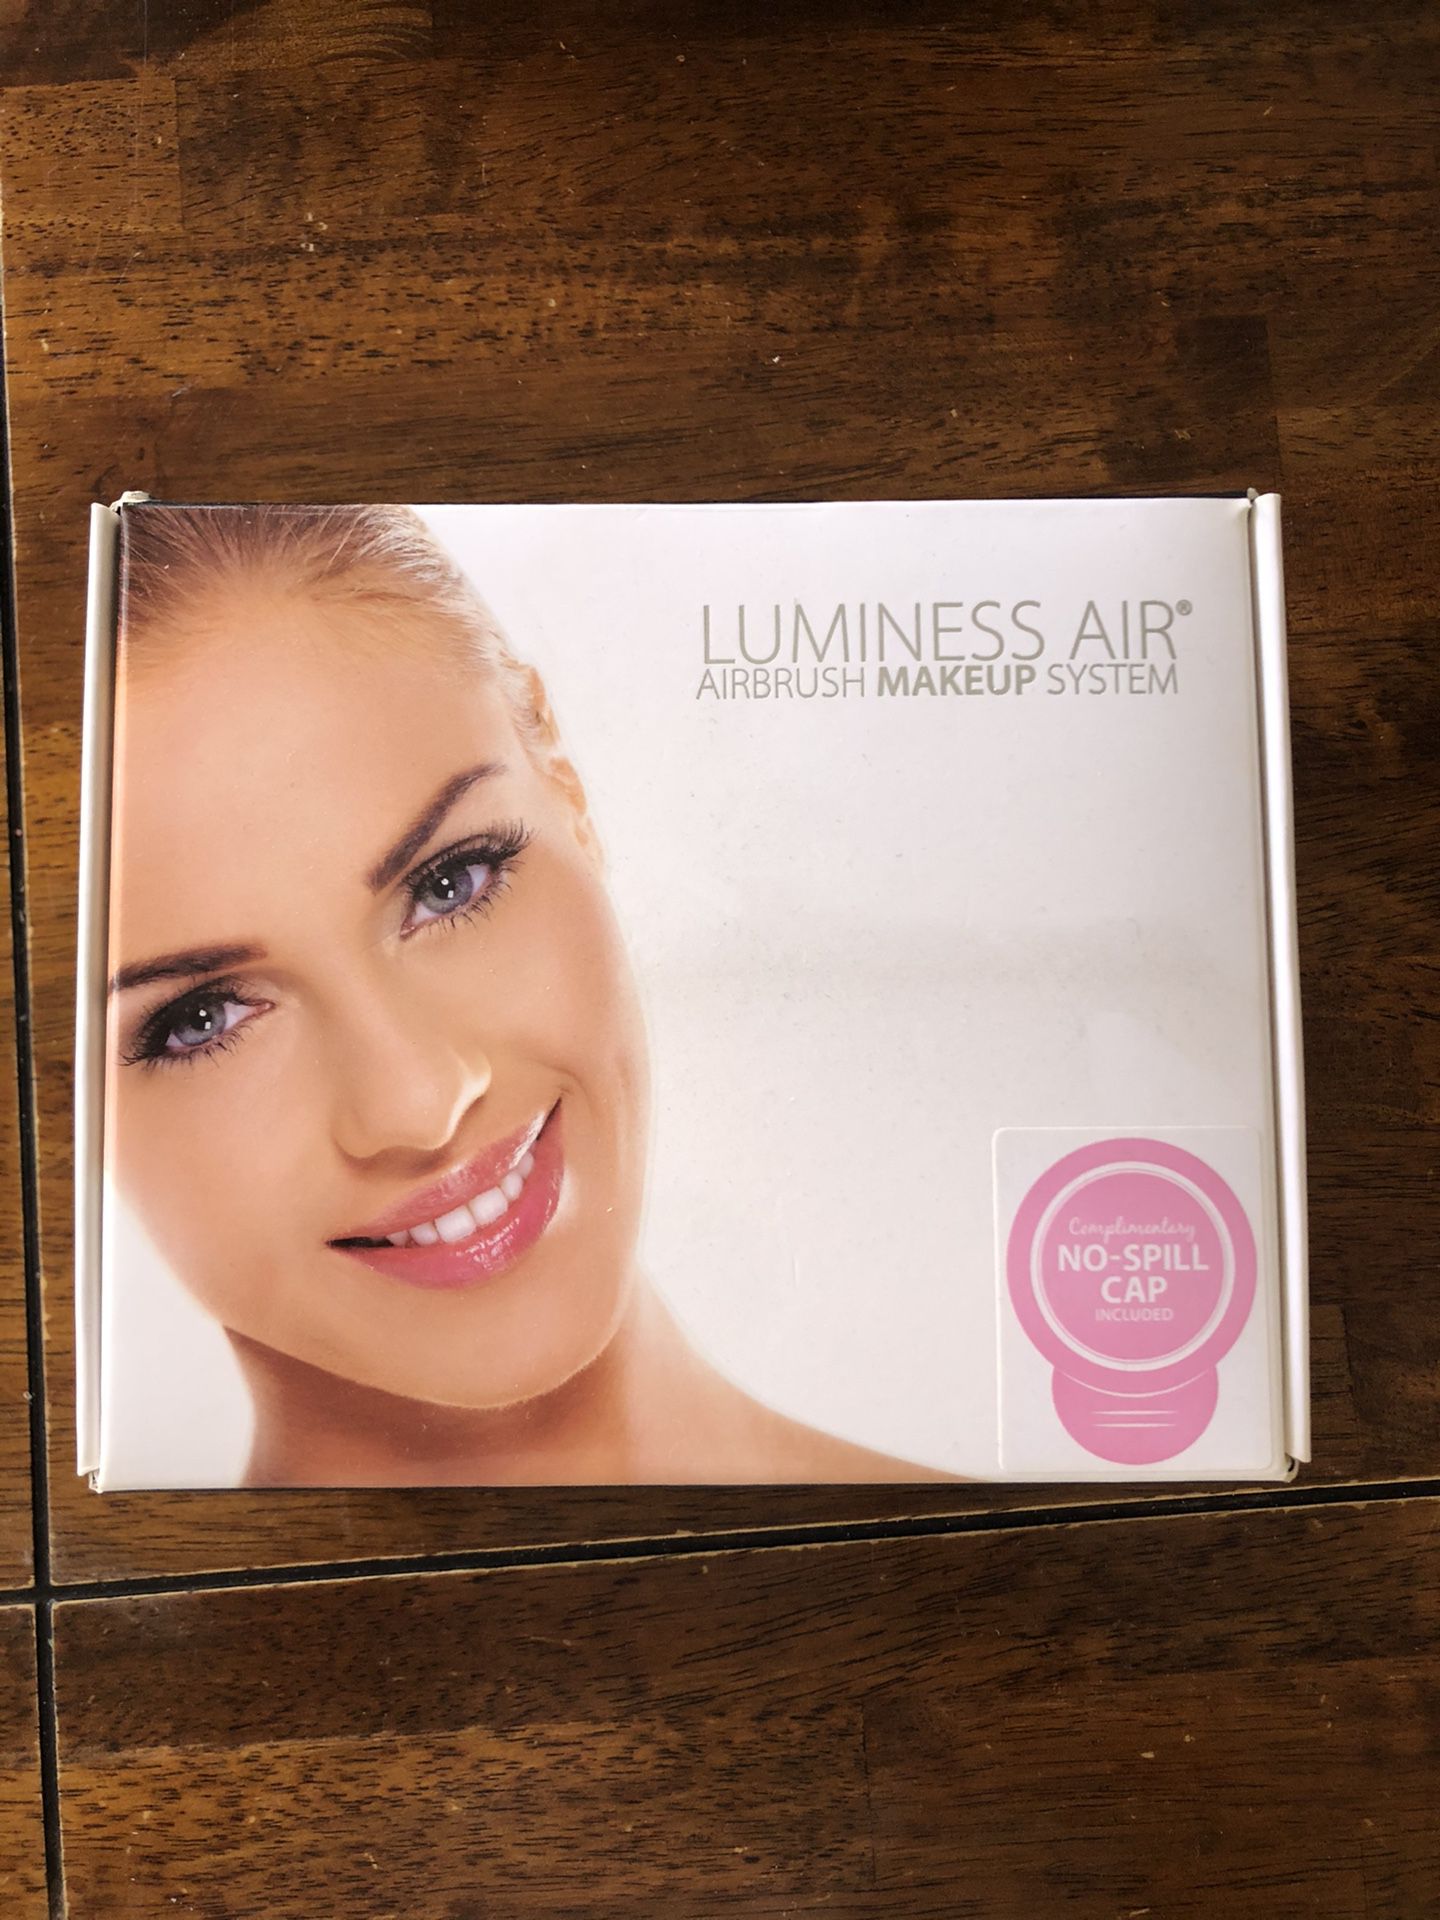 NEW Luminess Air BC-100 Airbrush Makeup System - No make up - W